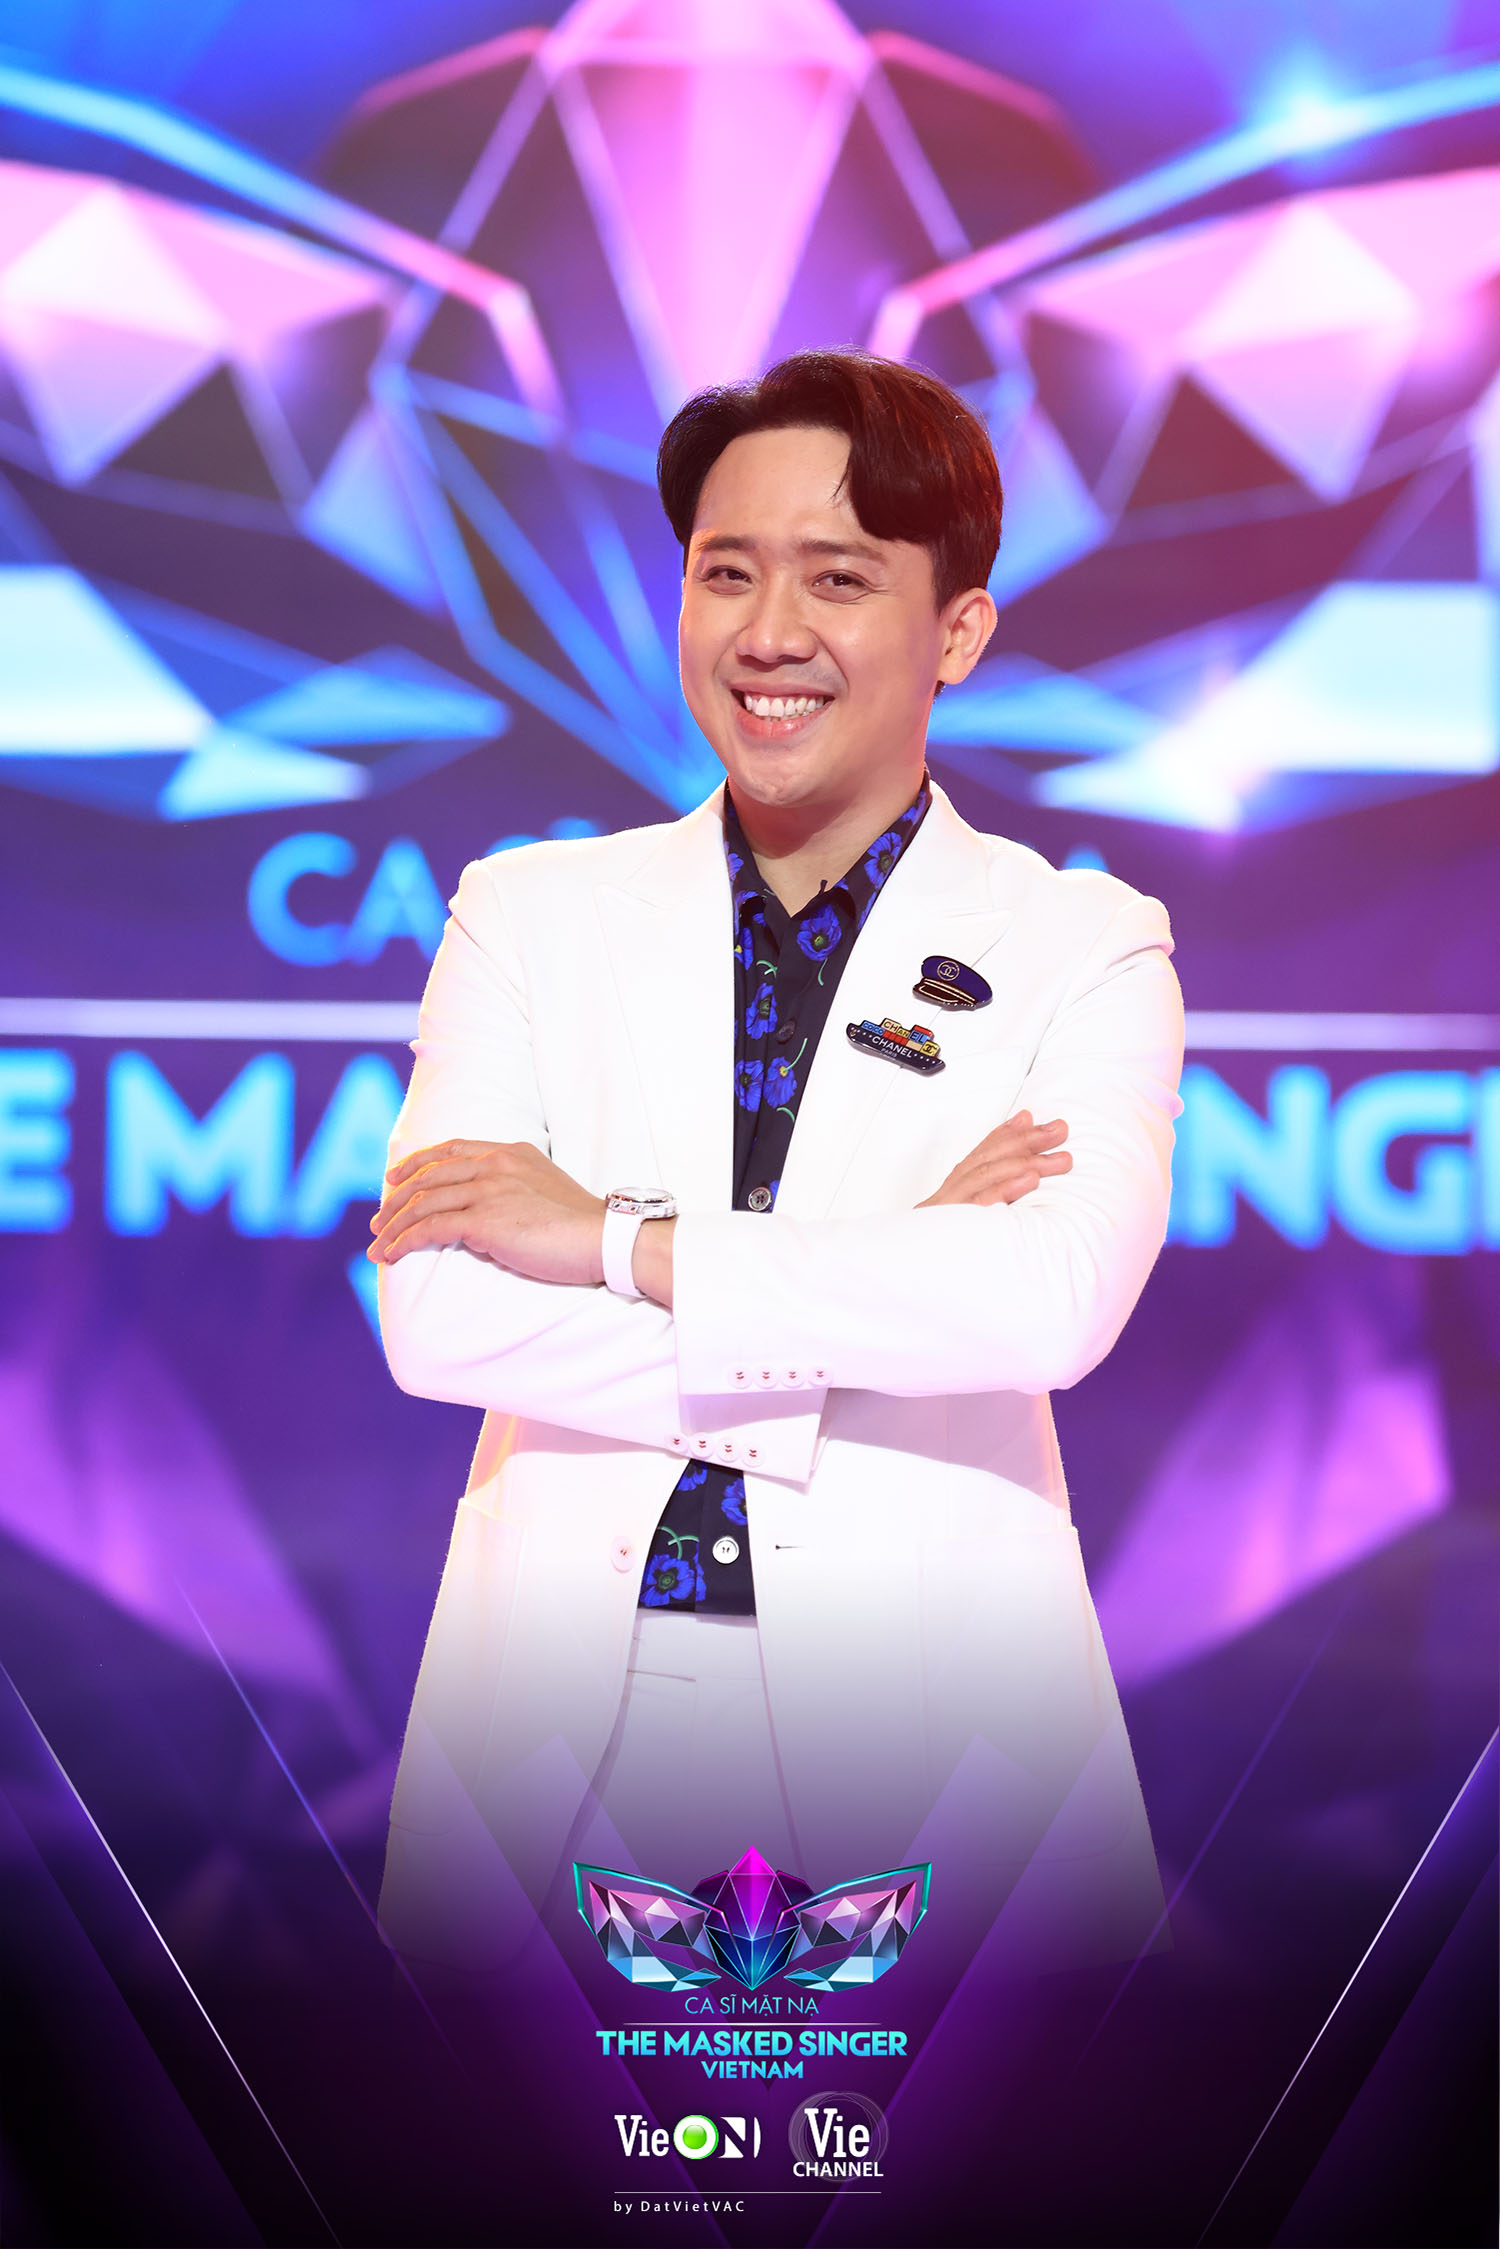 Không phải là MC, Trấn Thành bất ngờ “debut” vai trò cố vấn cho một chương trình tranh tài âm nhạc giữa các ca sĩ hàng đầu Việt Nam  - Ảnh 5.